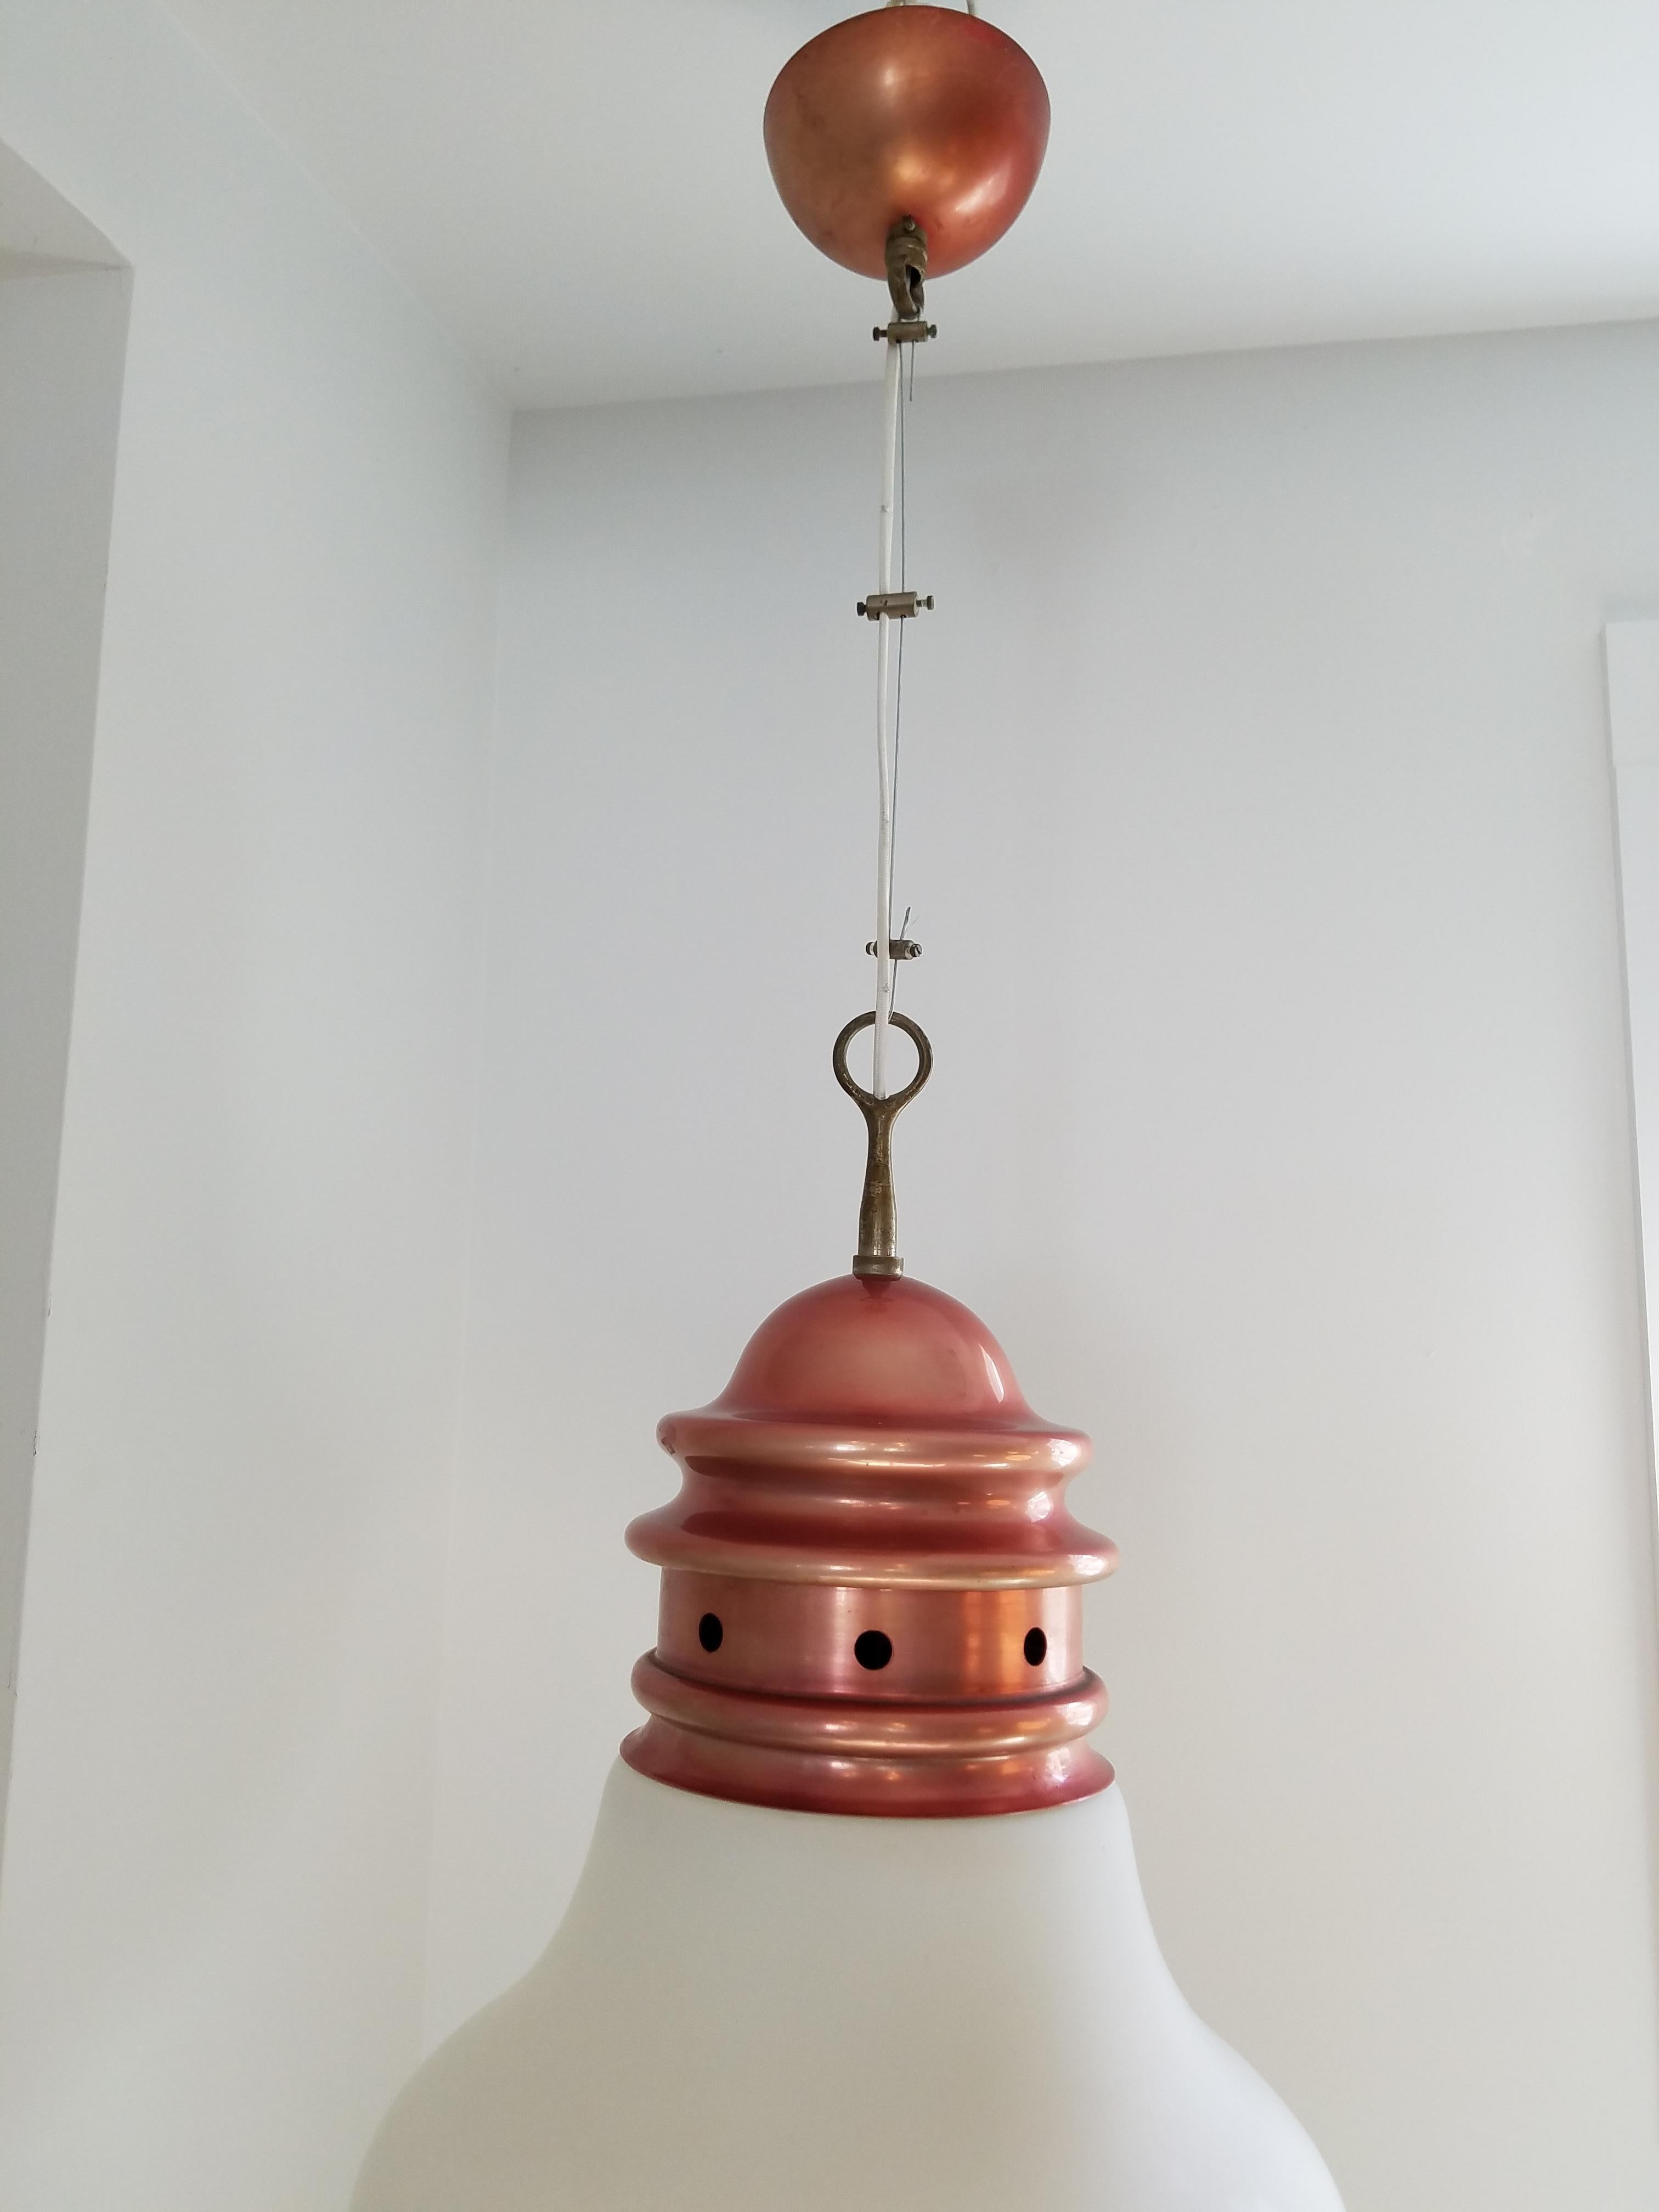 Conçue par Piero Brombin pour Artemide, cette lampe suspendue est une suspension en fil de fer dans l'esprit du mouvement OpArt du milieu des années 1960. Fabriqué en cuivre avec un abat-jour en verre opalin dans la forme classique d'une ampoule